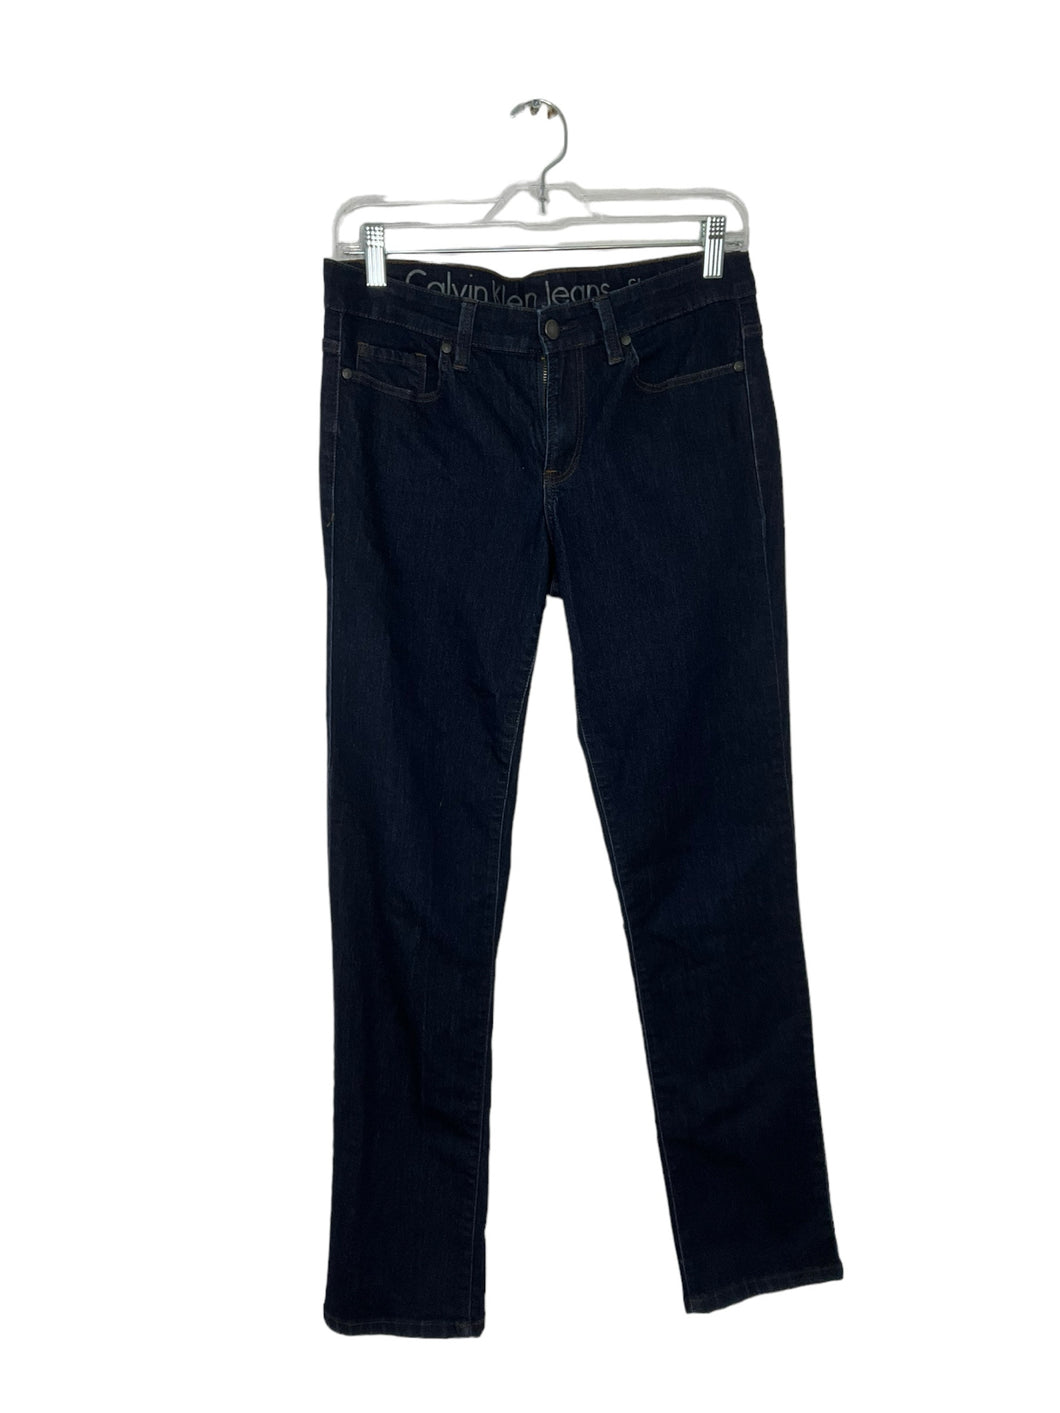 Calvin Klein Size 6 Denim Jeans- Ladies